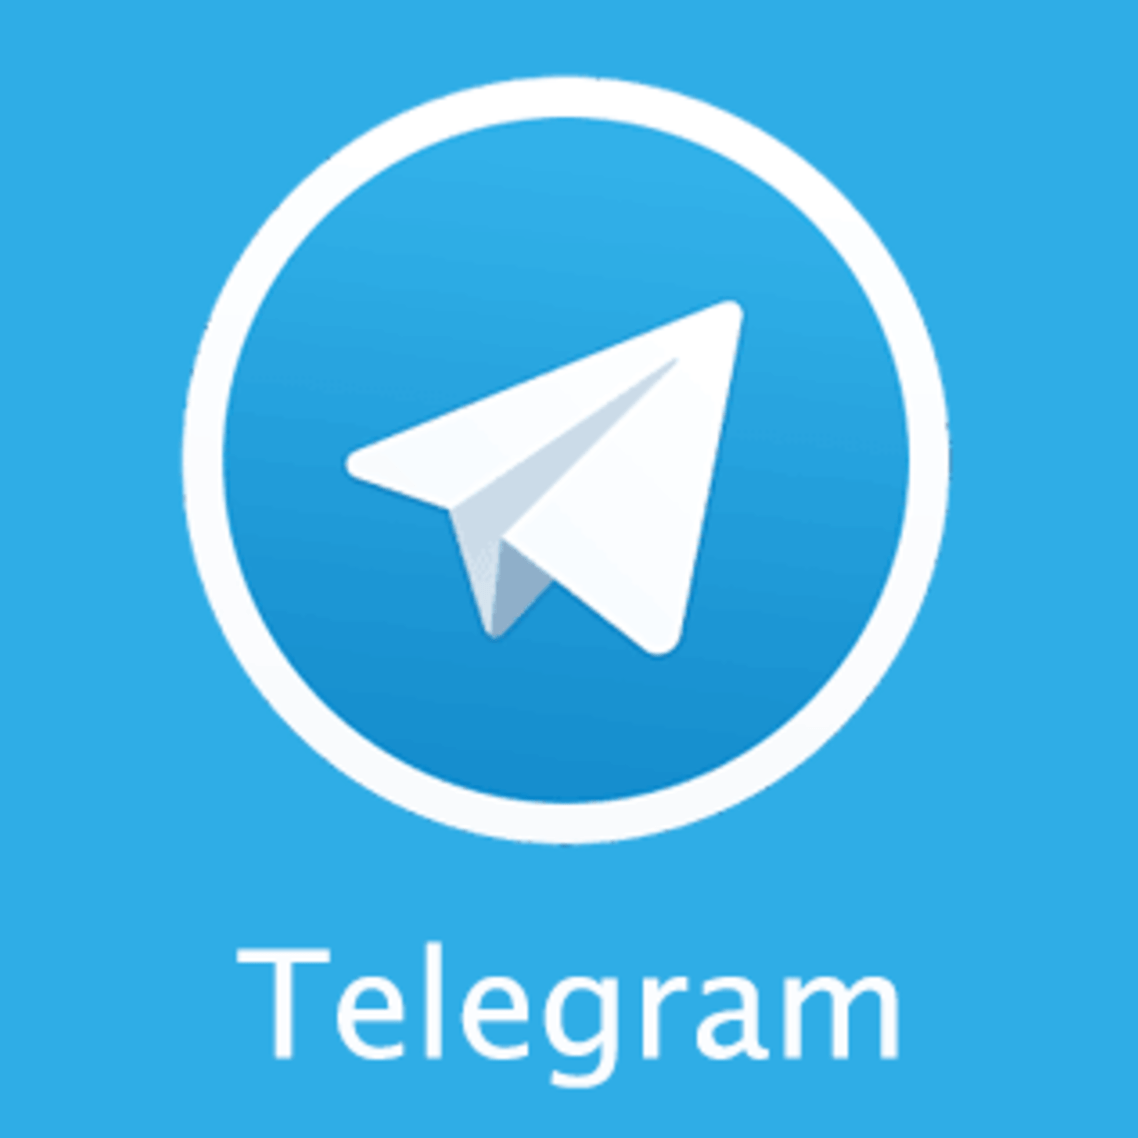 Tài Khoản Telegram reg phong đầy đủ file Session+Tdata